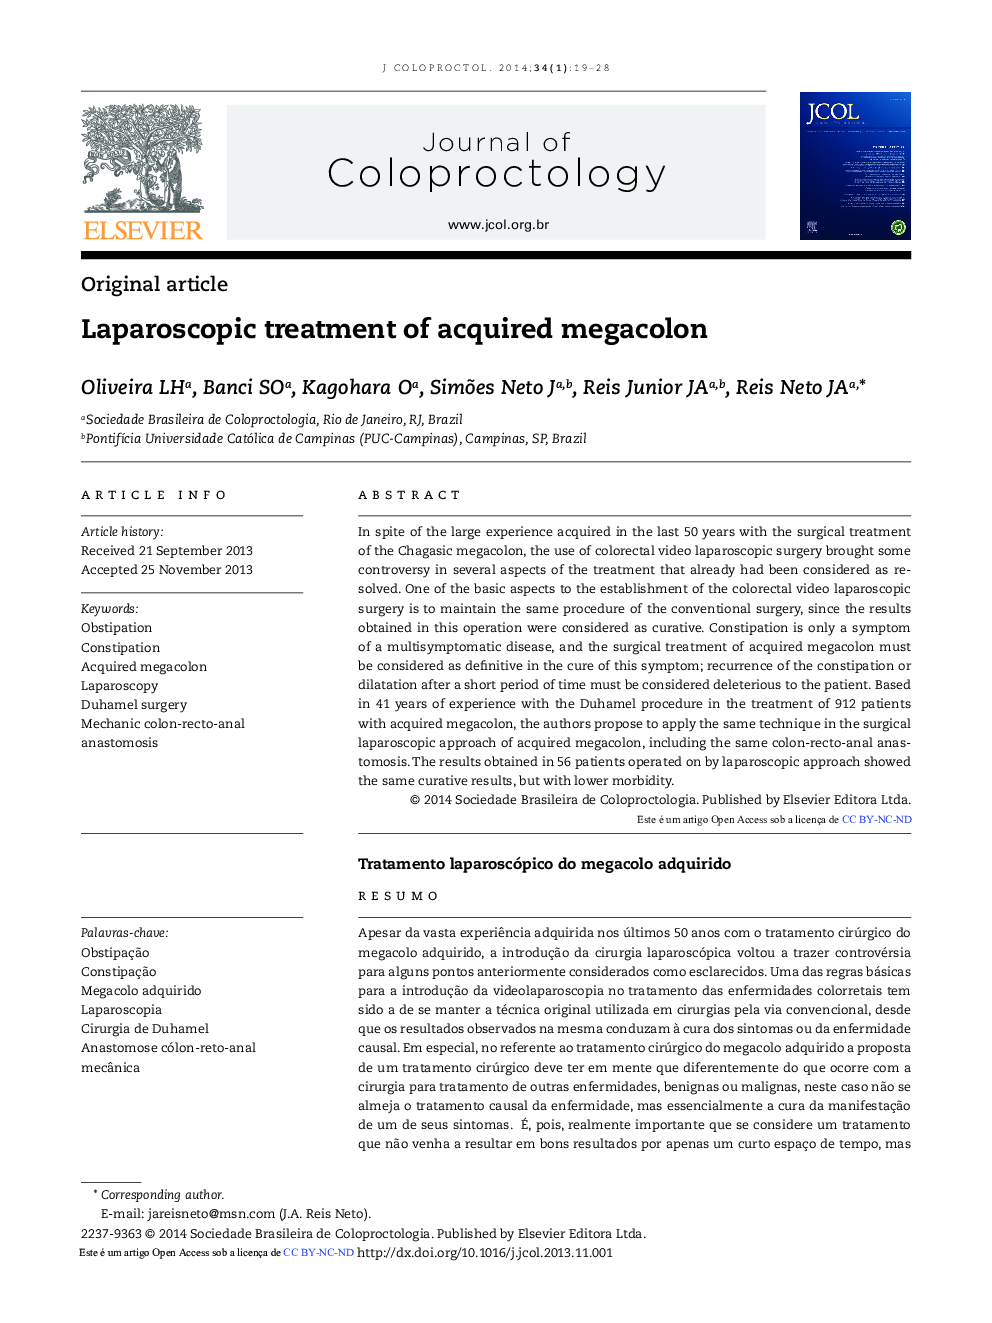 درمان لاپاروسکوپی مگاکولون به دست آمده 